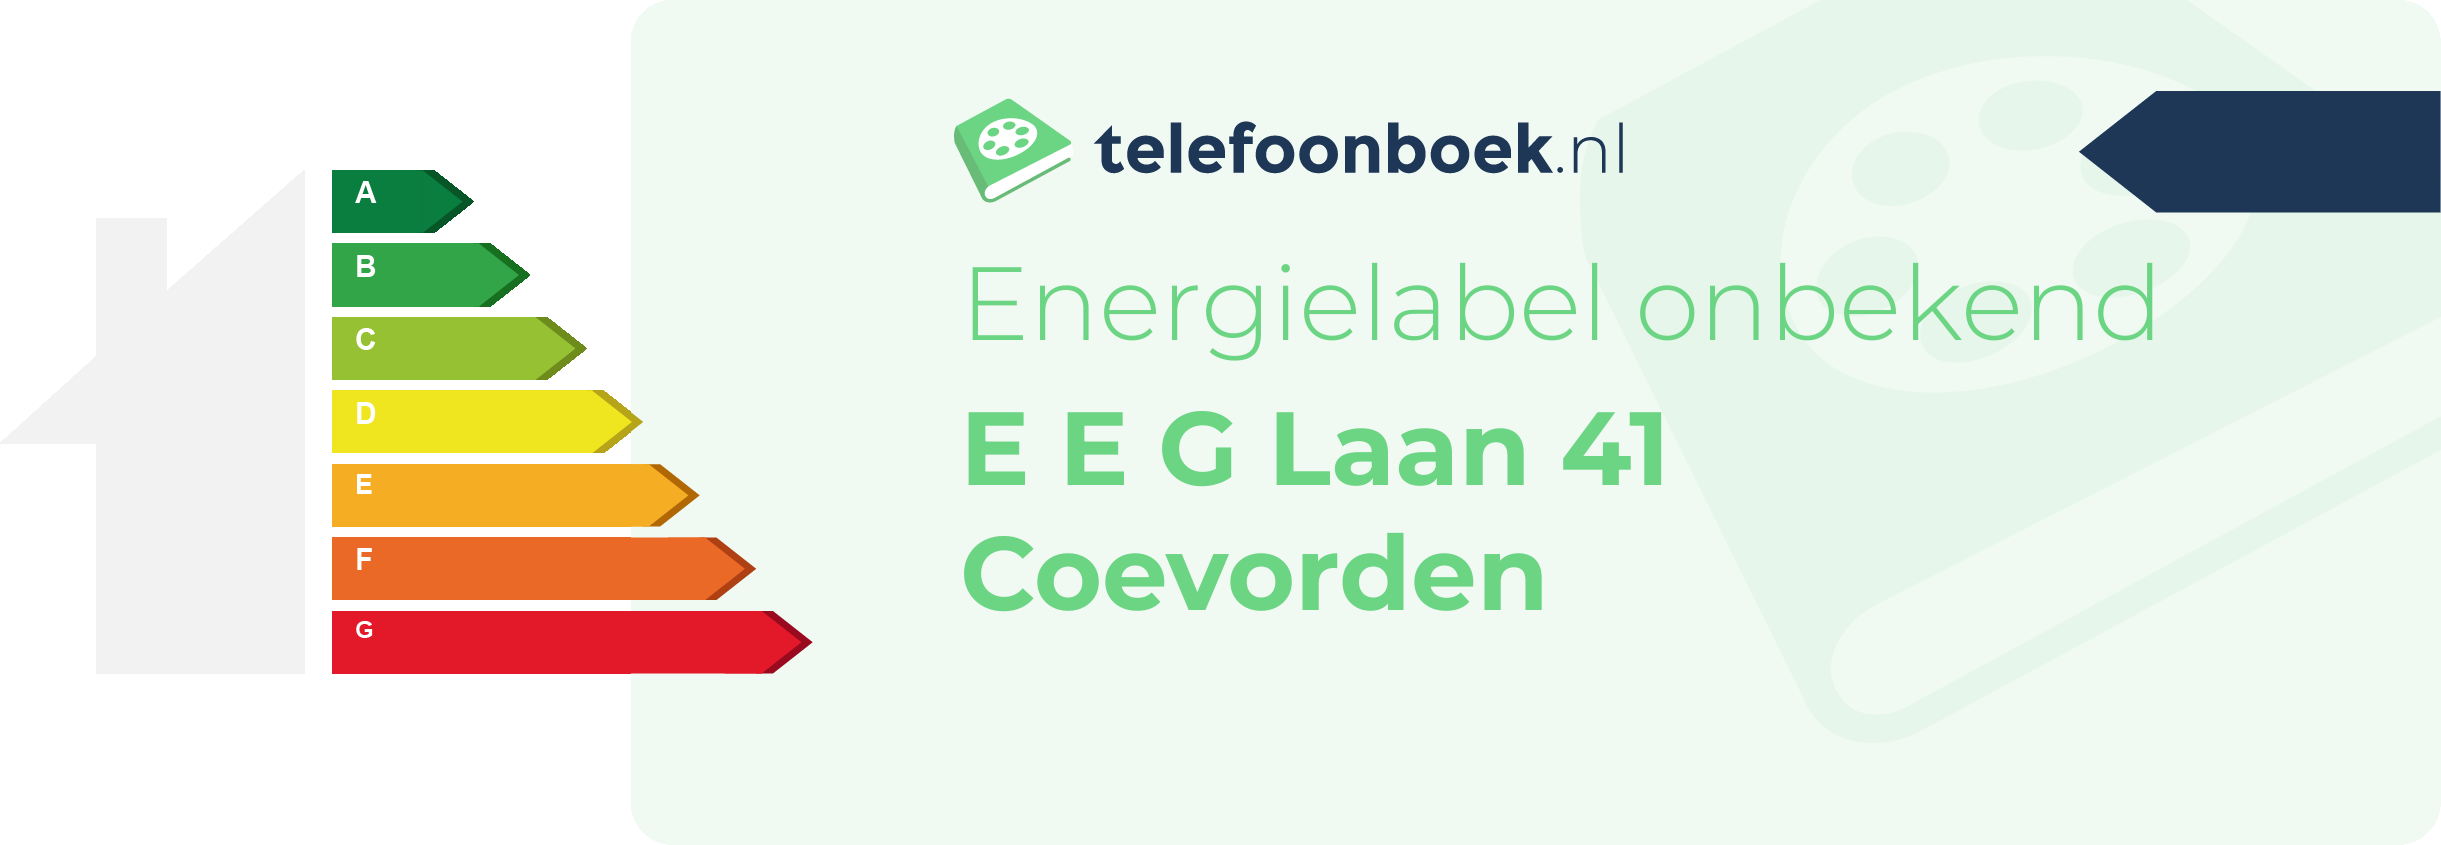 Energielabel E E G Laan 41 Coevorden